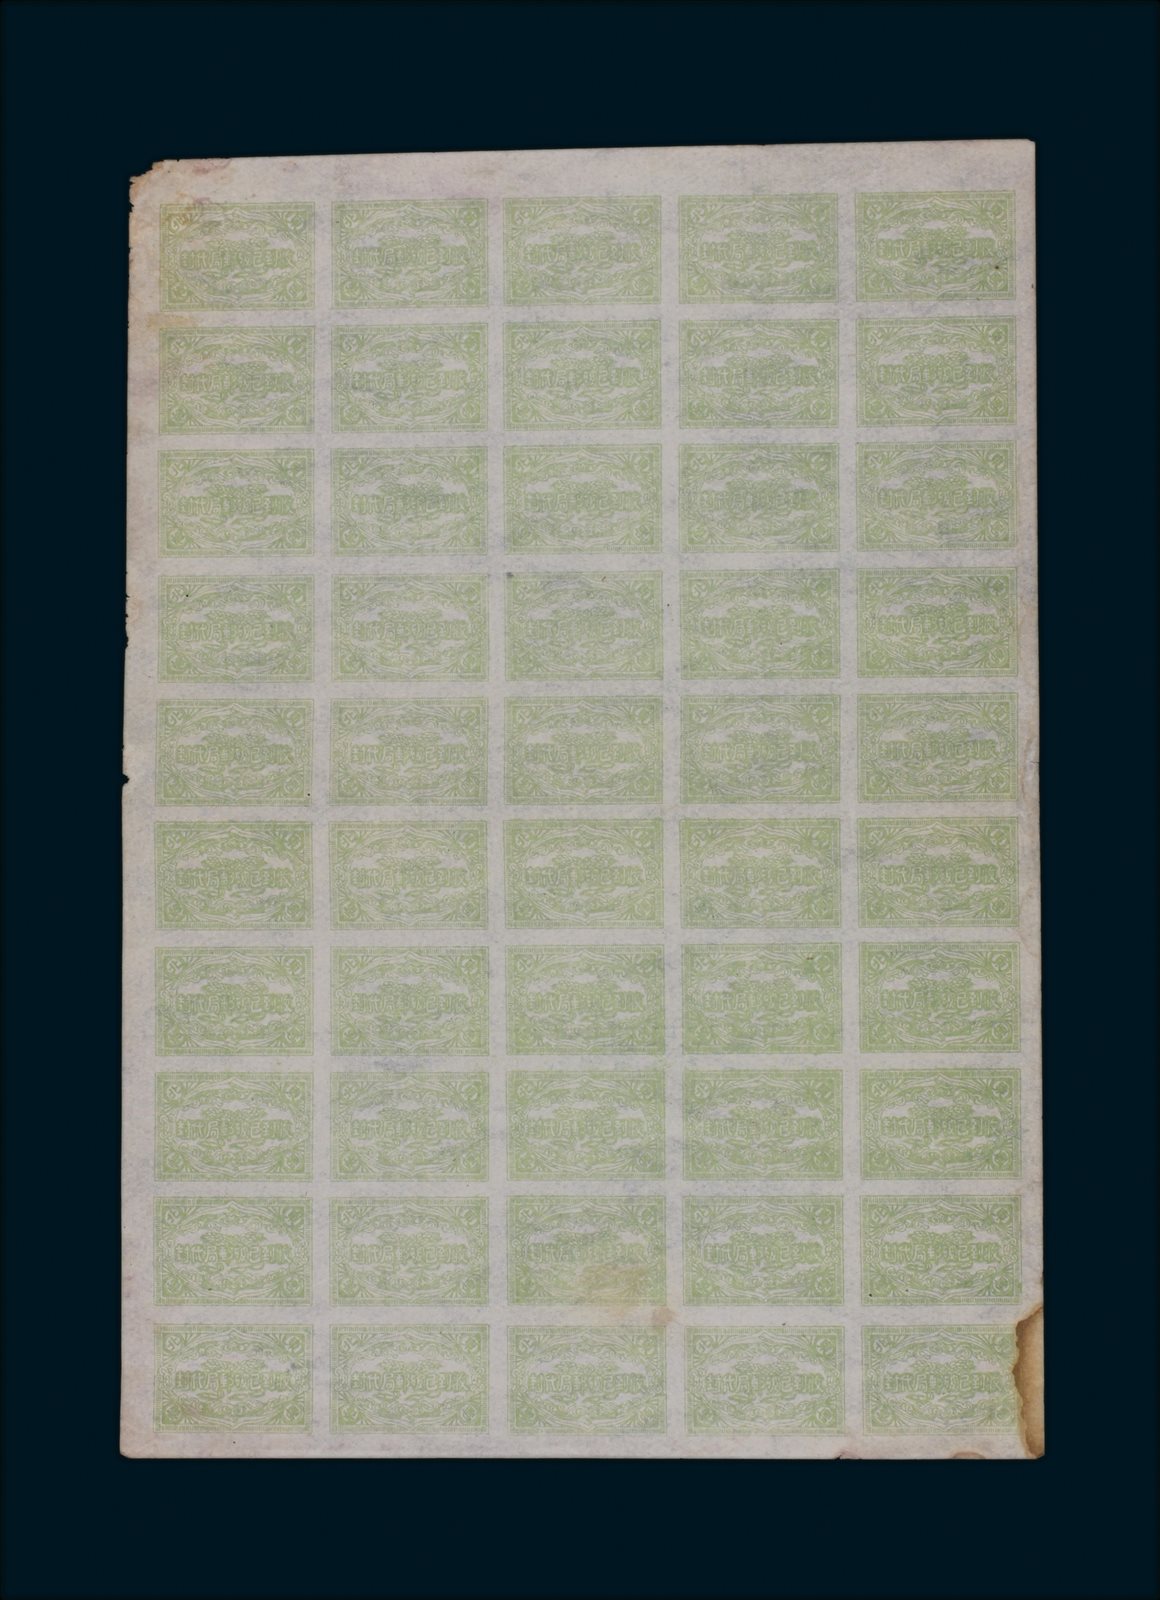 东北邮政“收到已破 邮局代封”代封纸50枚，为50枚整版